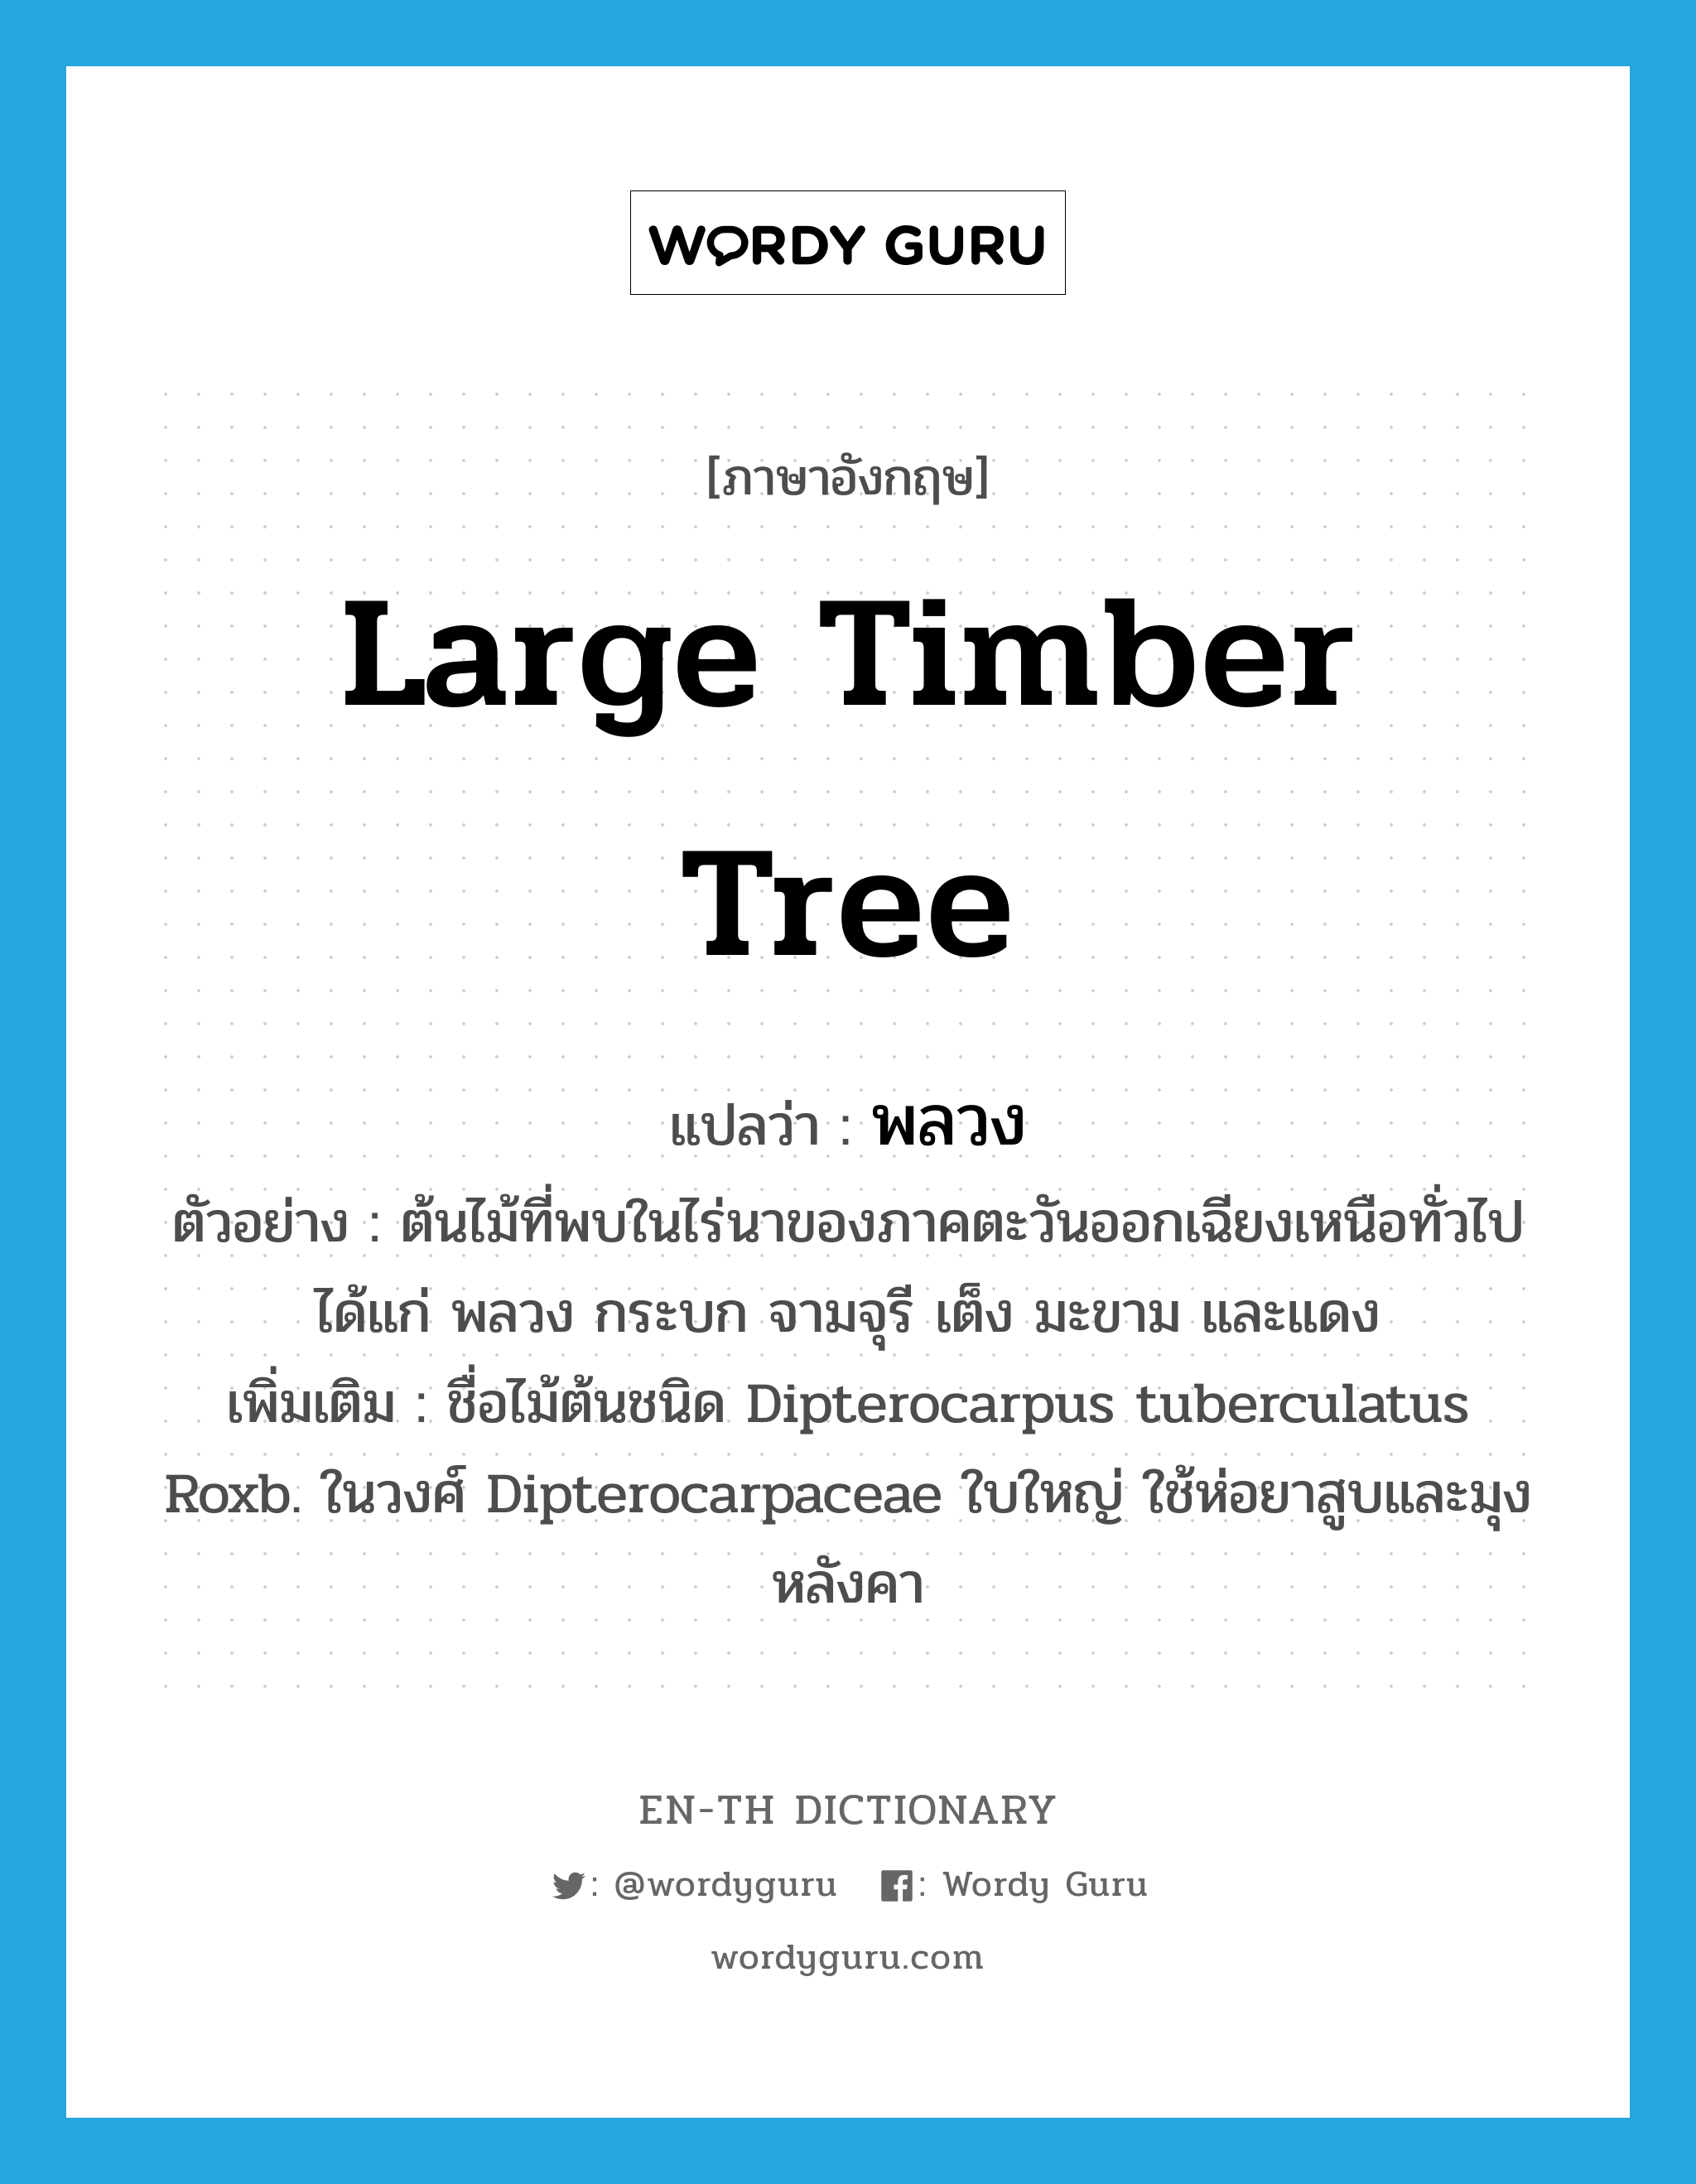 พลวง ภาษาอังกฤษ?, คำศัพท์ภาษาอังกฤษ พลวง แปลว่า large timber tree ประเภท N ตัวอย่าง ต้นไม้ที่พบในไร่นาของภาคตะวันออกเฉียงเหนือทั่วไปได้แก่ พลวง กระบก จามจุรี เต็ง มะขาม และแดง เพิ่มเติม ชื่อไม้ต้นชนิด Dipterocarpus tuberculatus Roxb. ในวงศ์ Dipterocarpaceae ใบใหญ่ ใช้ห่อยาสูบและมุงหลังคา หมวด N